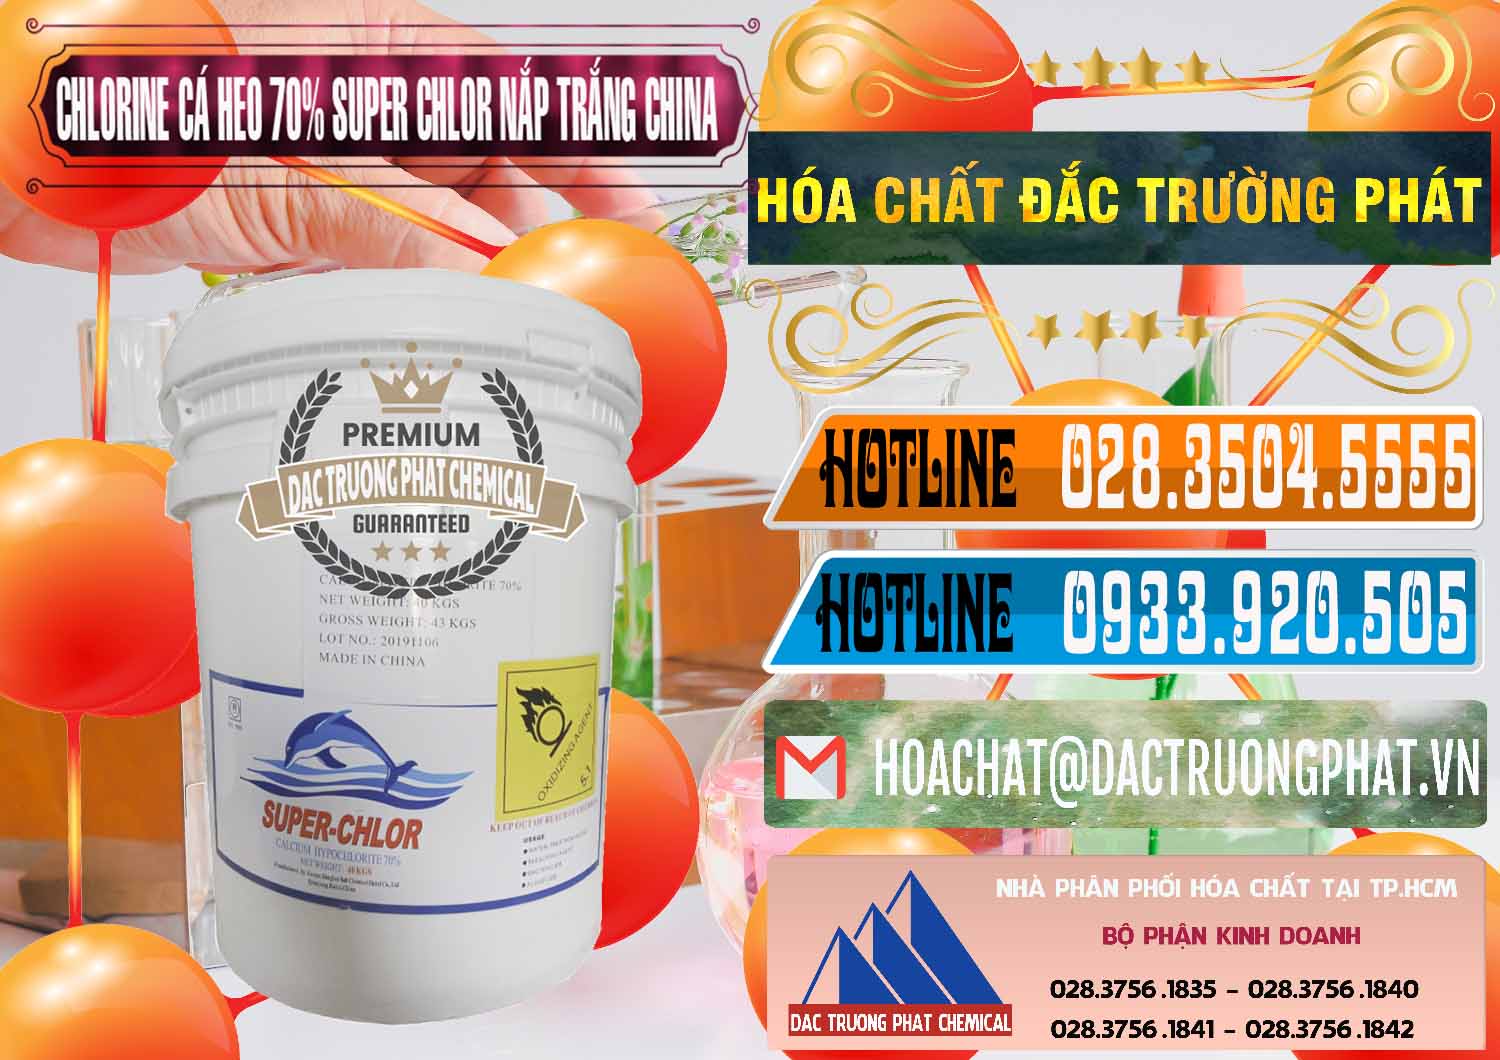 Bán & cung cấp Clorin - Chlorine Cá Heo 70% Super Chlor Nắp Trắng Trung Quốc China - 0240 - Đơn vị chuyên cung ứng & phân phối hóa chất tại TP.HCM - stmp.net